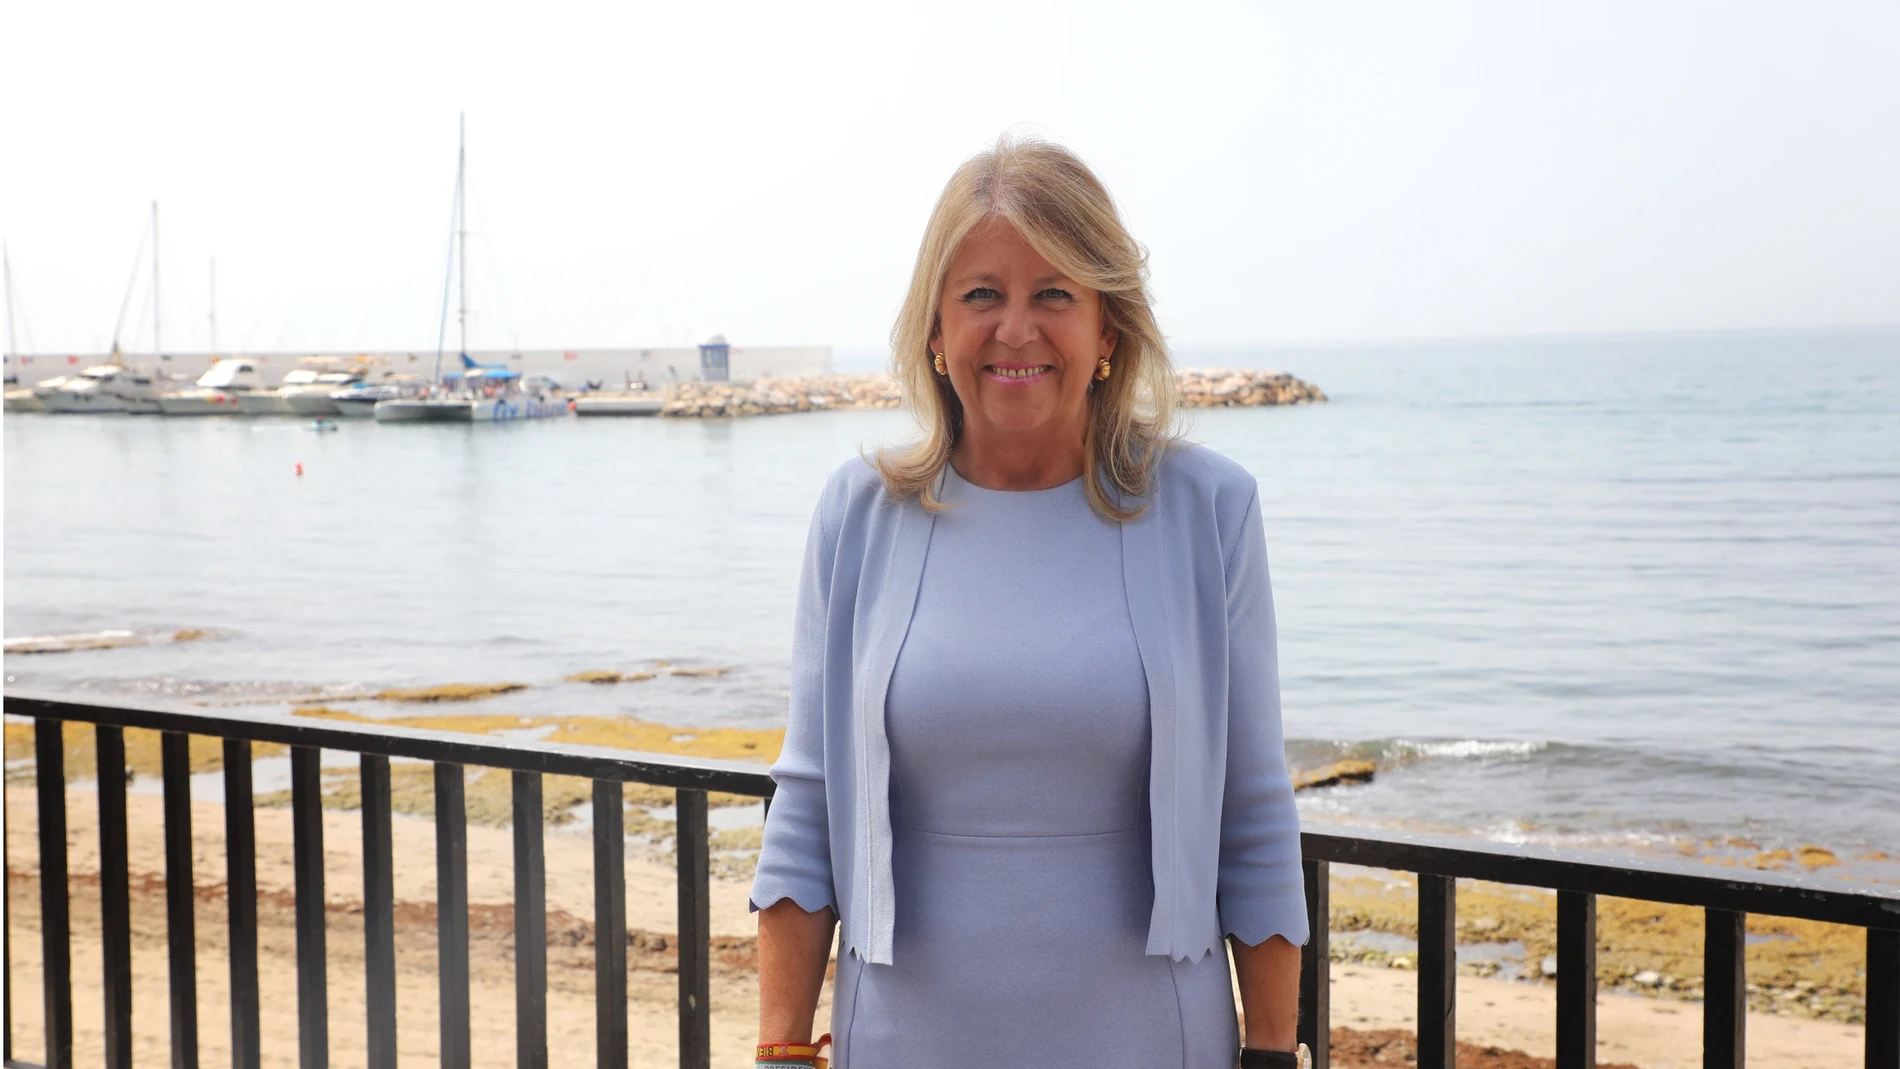 La alcaldesa de Marbella, Ángeles Muñoz, en una imagen de archivo